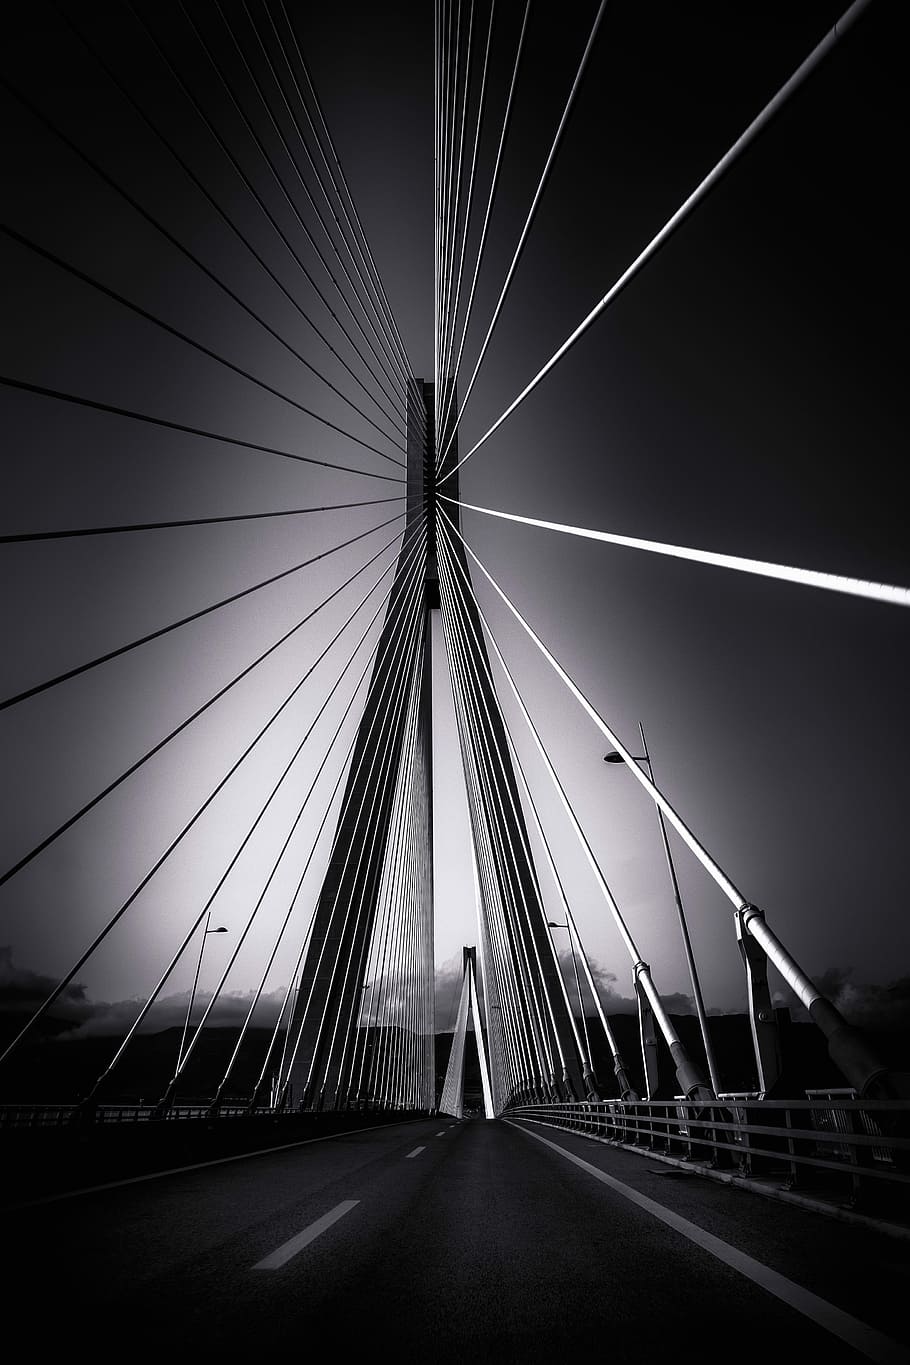 fotografía en escala de grises, puente, puente río-antirrio, puente atirantado, arquitectura, grecia, blanco y negro, transporte, conexión, puente - estructura hecha por el hombre